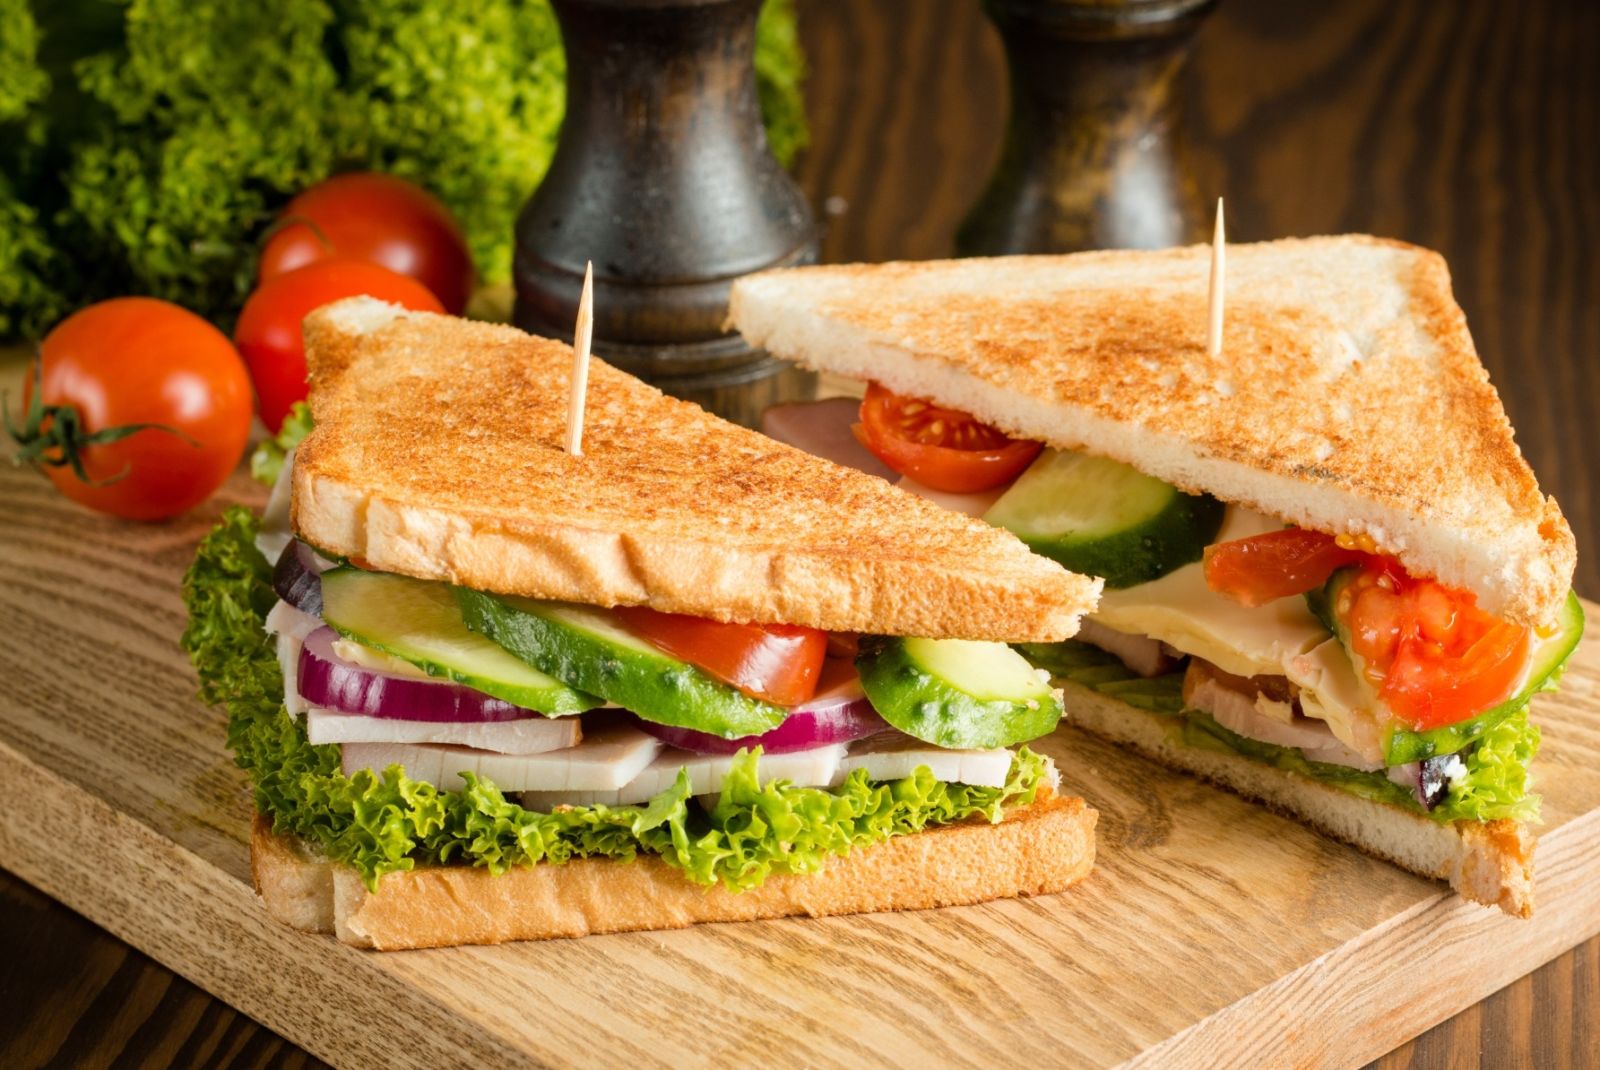 Bánh mì sandwich cung cấp nguồn dinh dưỡng dồi dào giúp cơ thể tràn đầy năng lượng